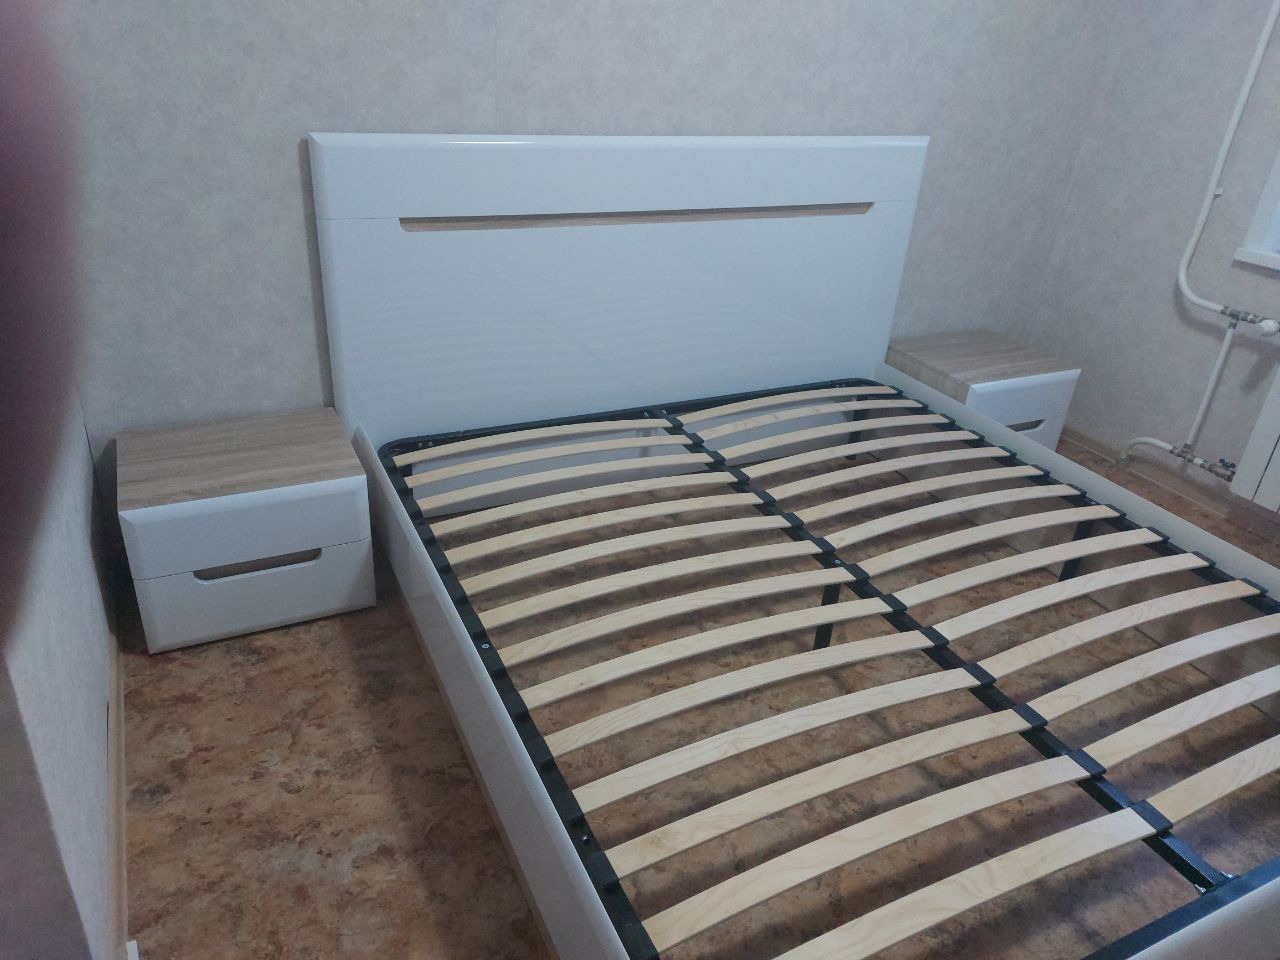 Односпальная кровать "Парма" 90 х 190 с подъемным механизмом цвет белый/сонома